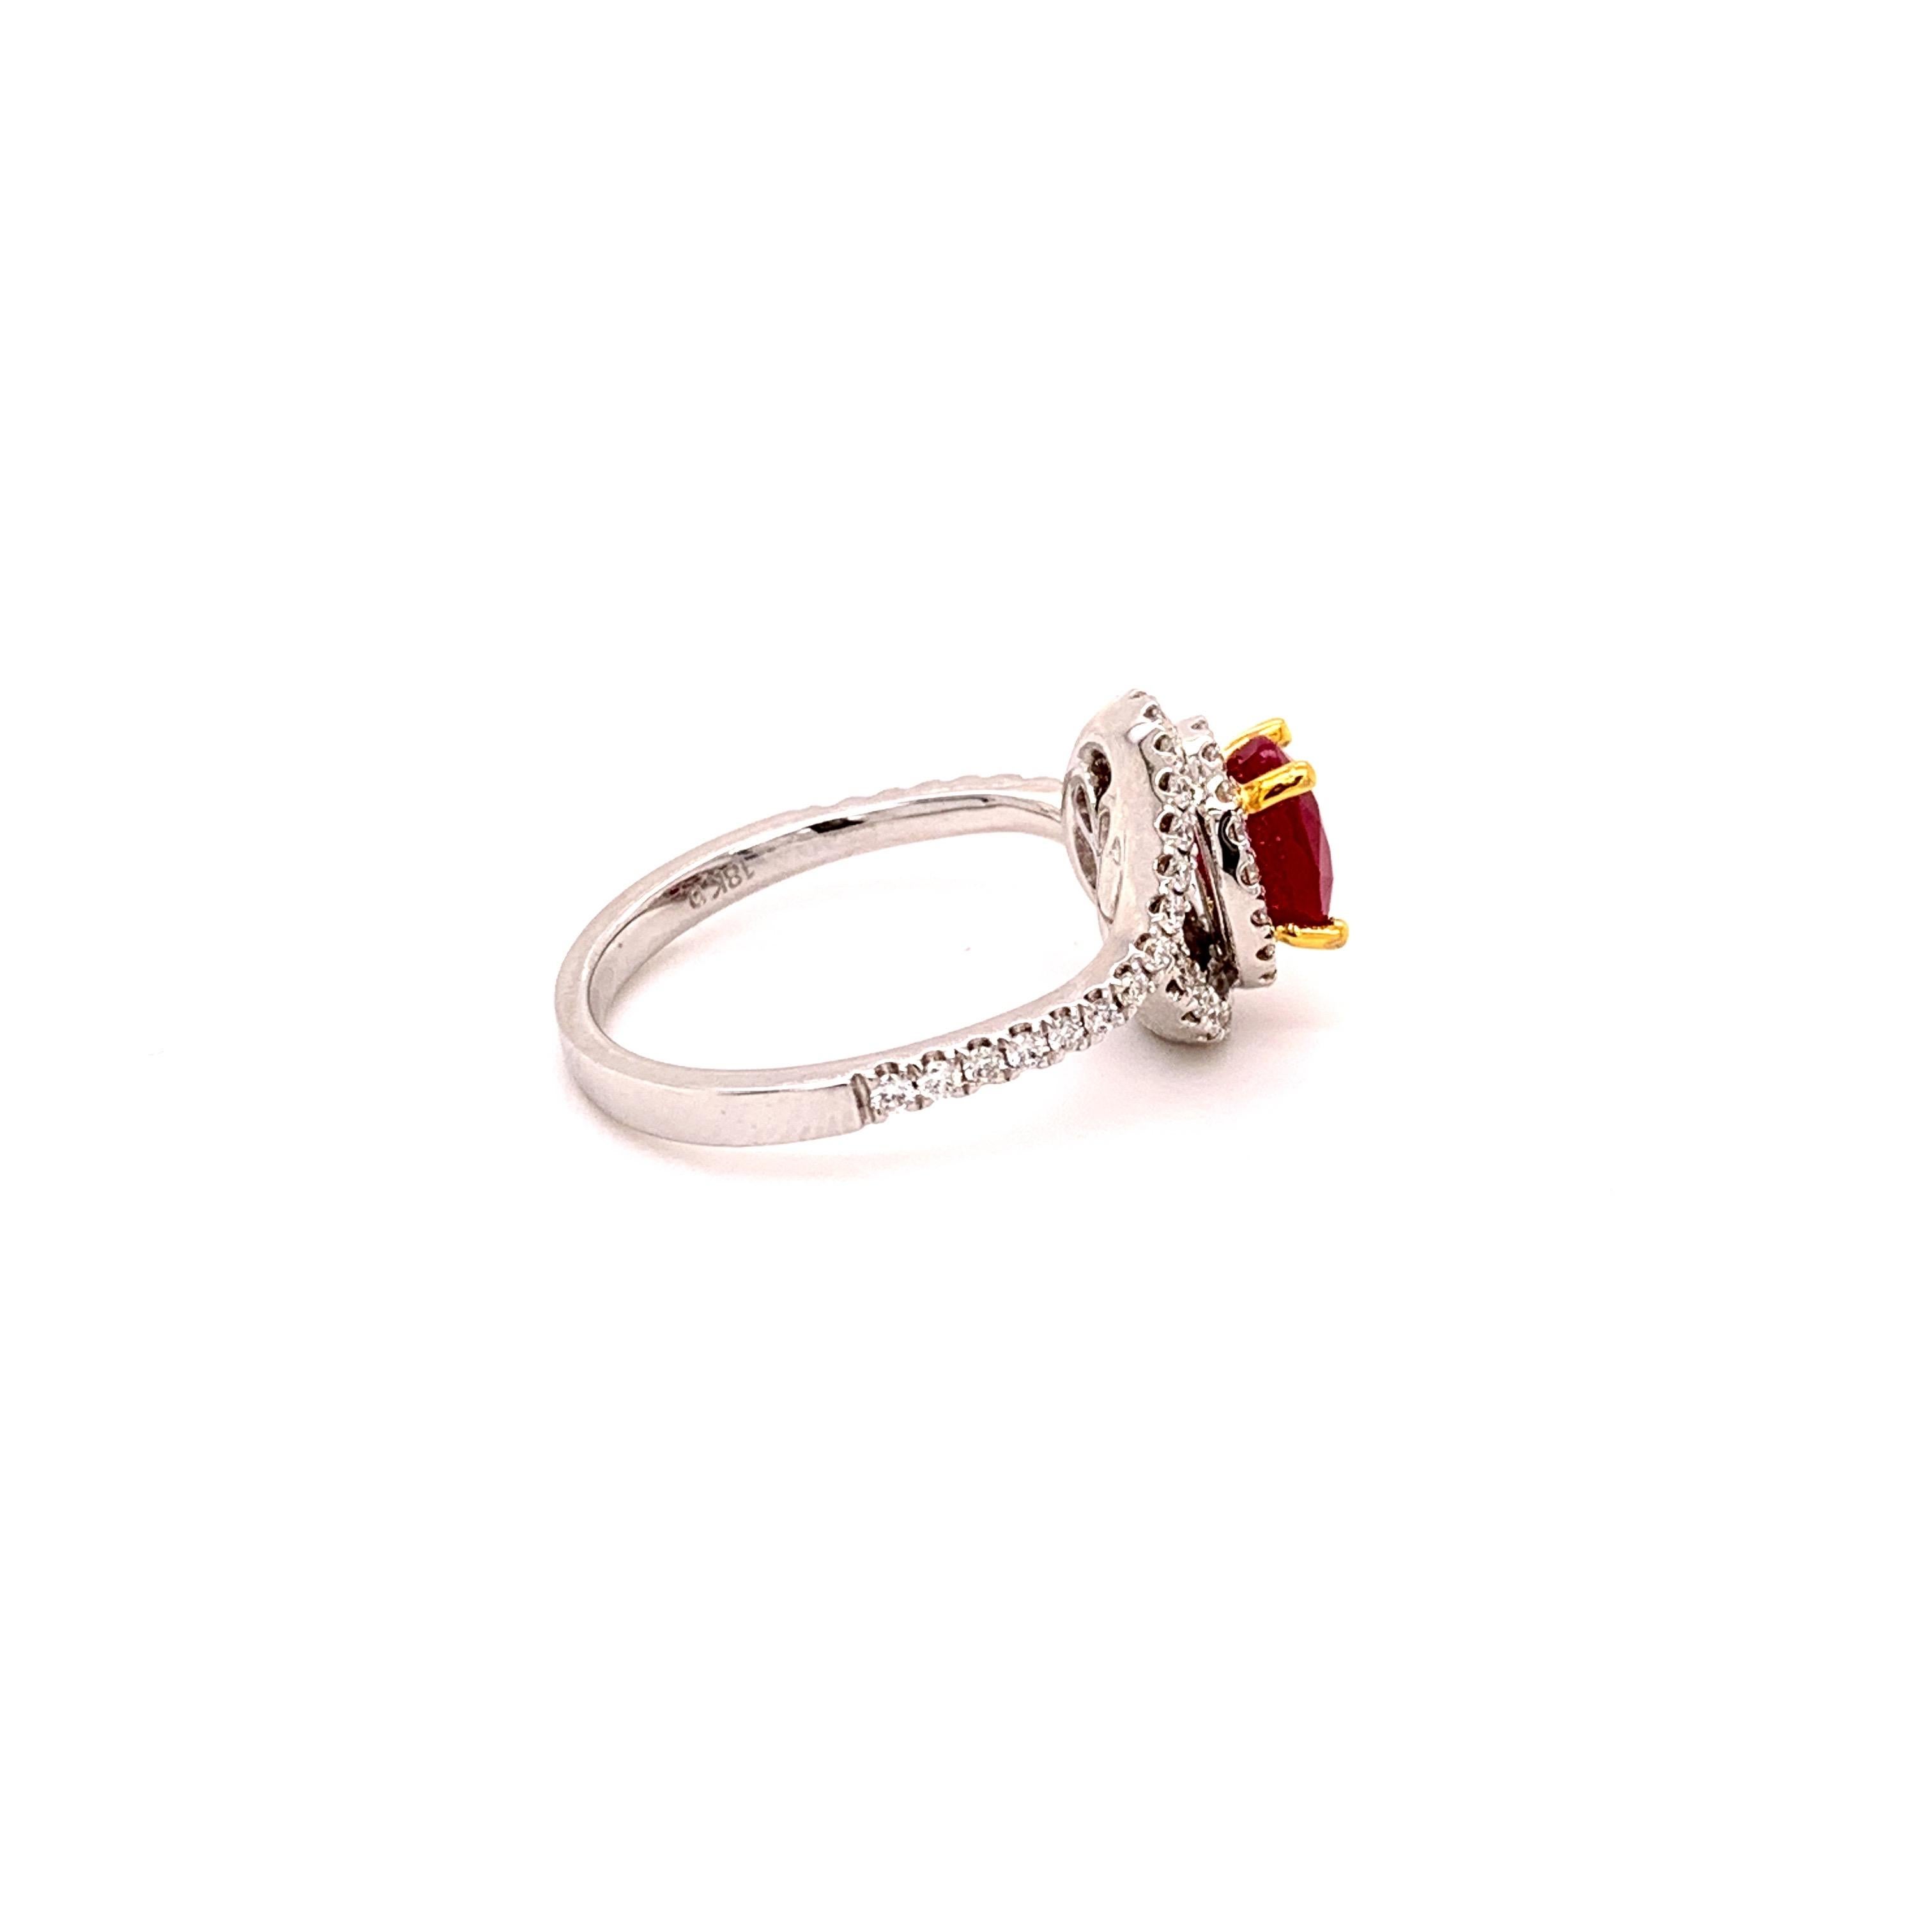 Contemporary Burma 1.59 Carat Ruby Diamond Ring